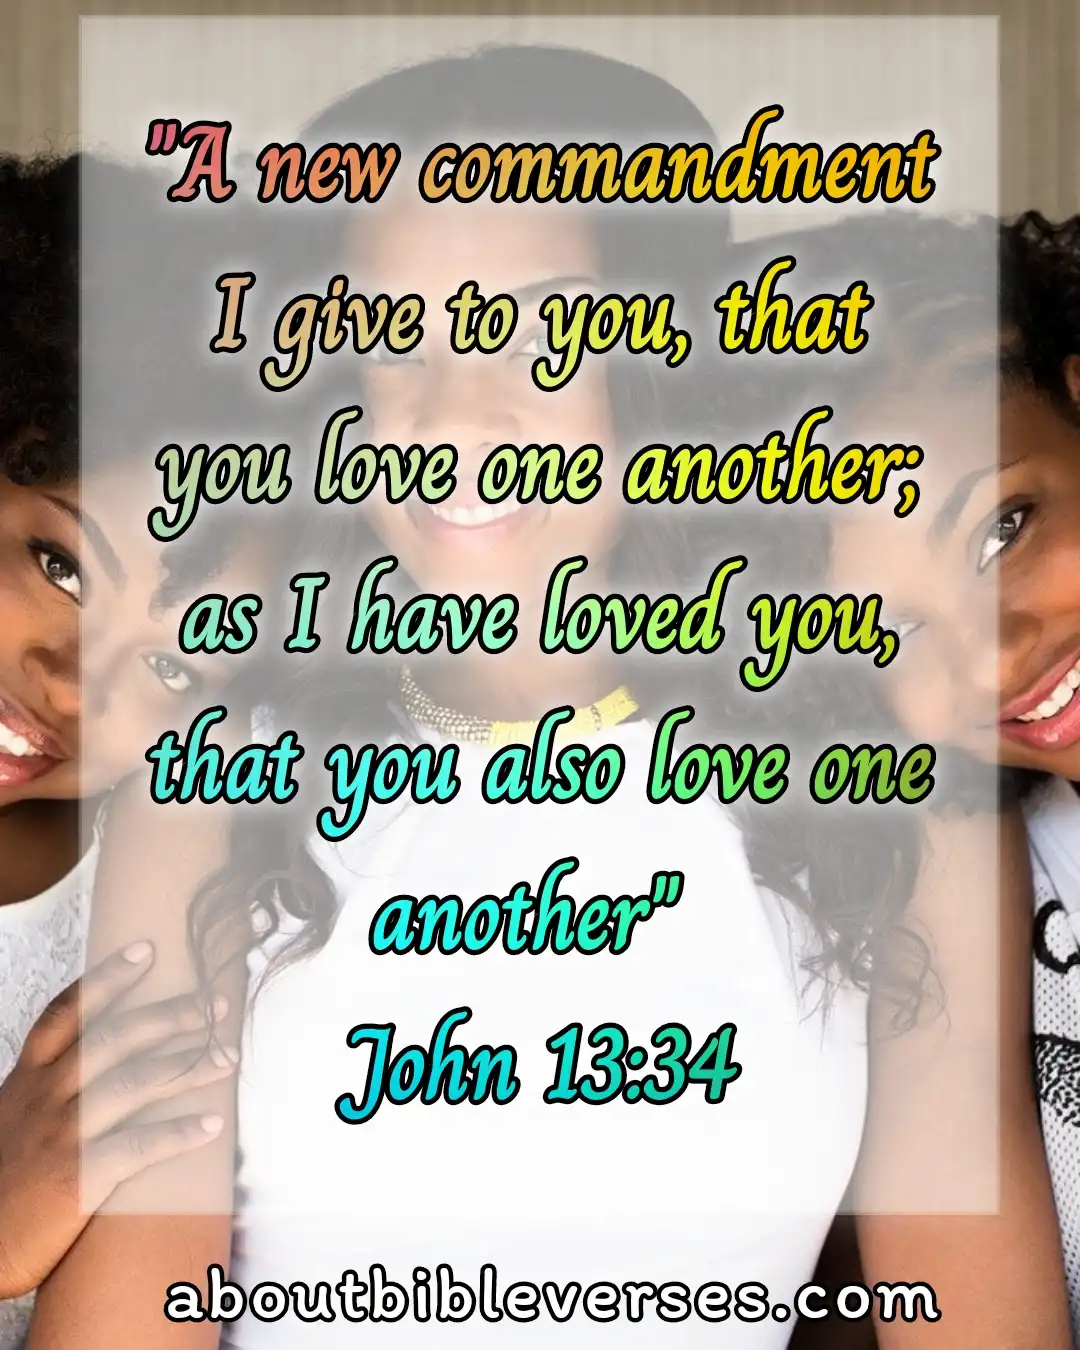 [Best] Más de 20 versículos de la Biblia sobre amar a tu prójimo como a ti mismo